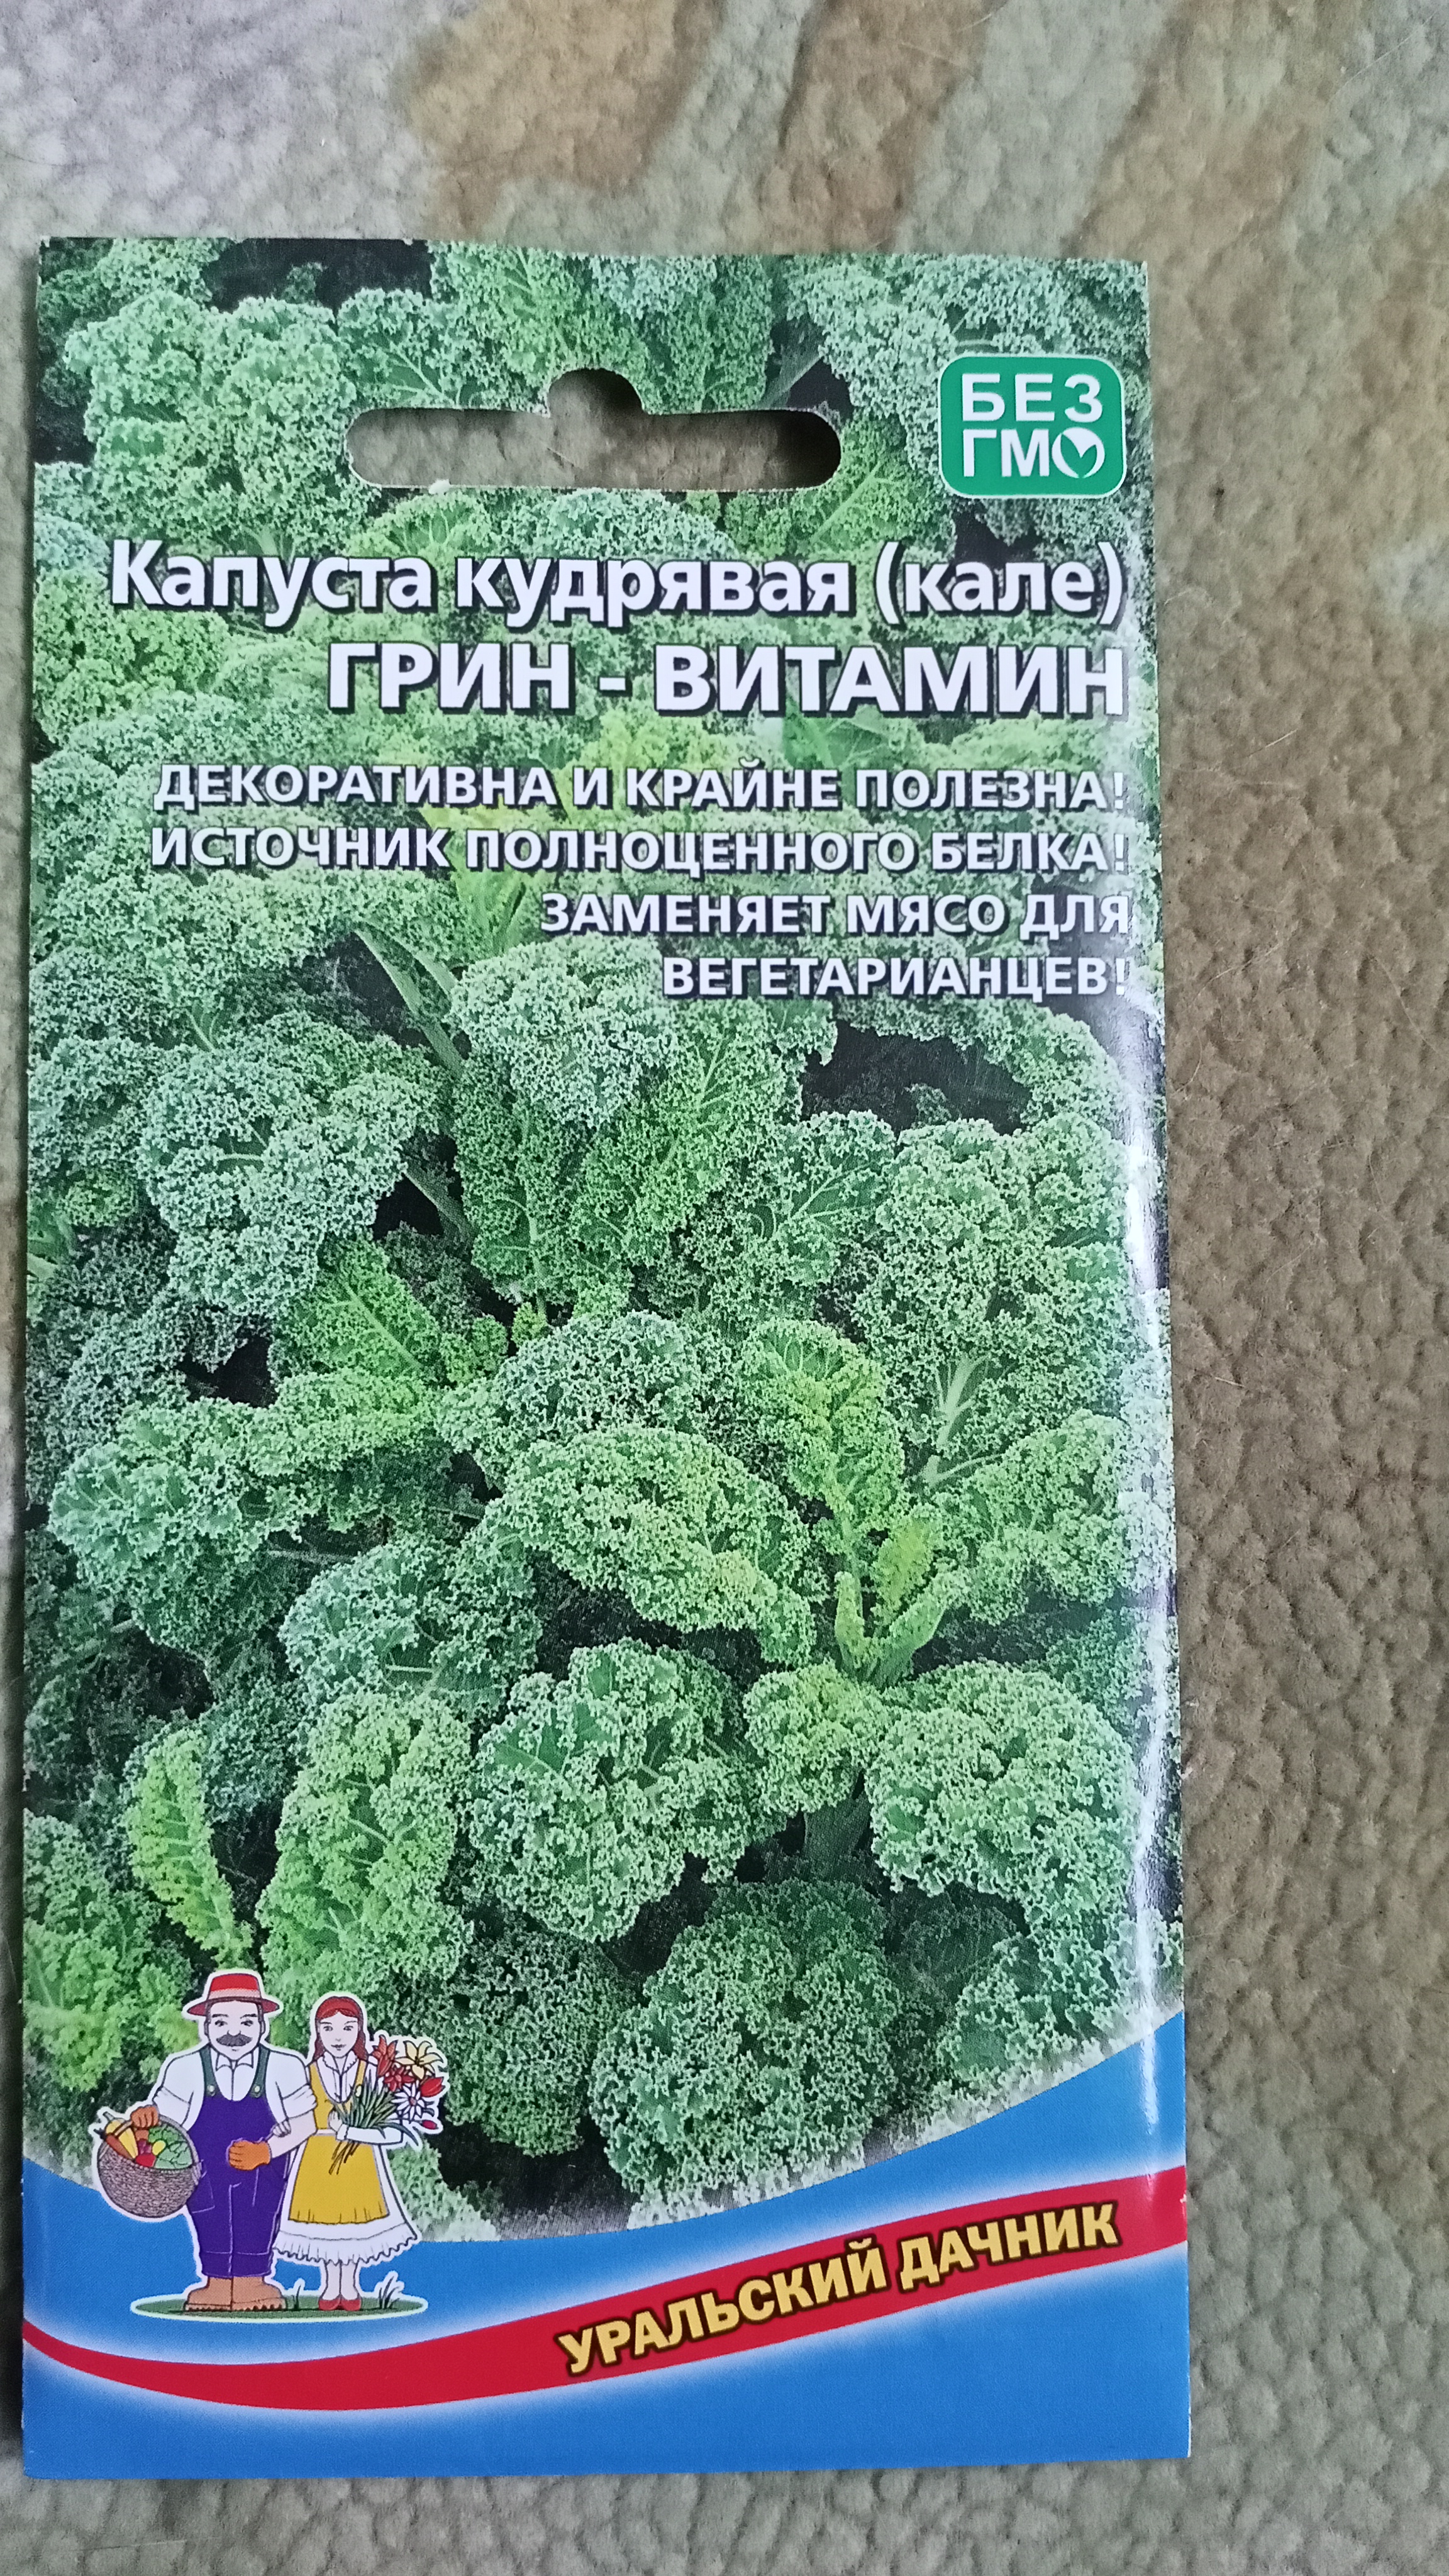 Семена капуста кудрявая Уральский дачник Грин витамин 17968 1 уп. - отзывыпокупателей на Мегамаркет